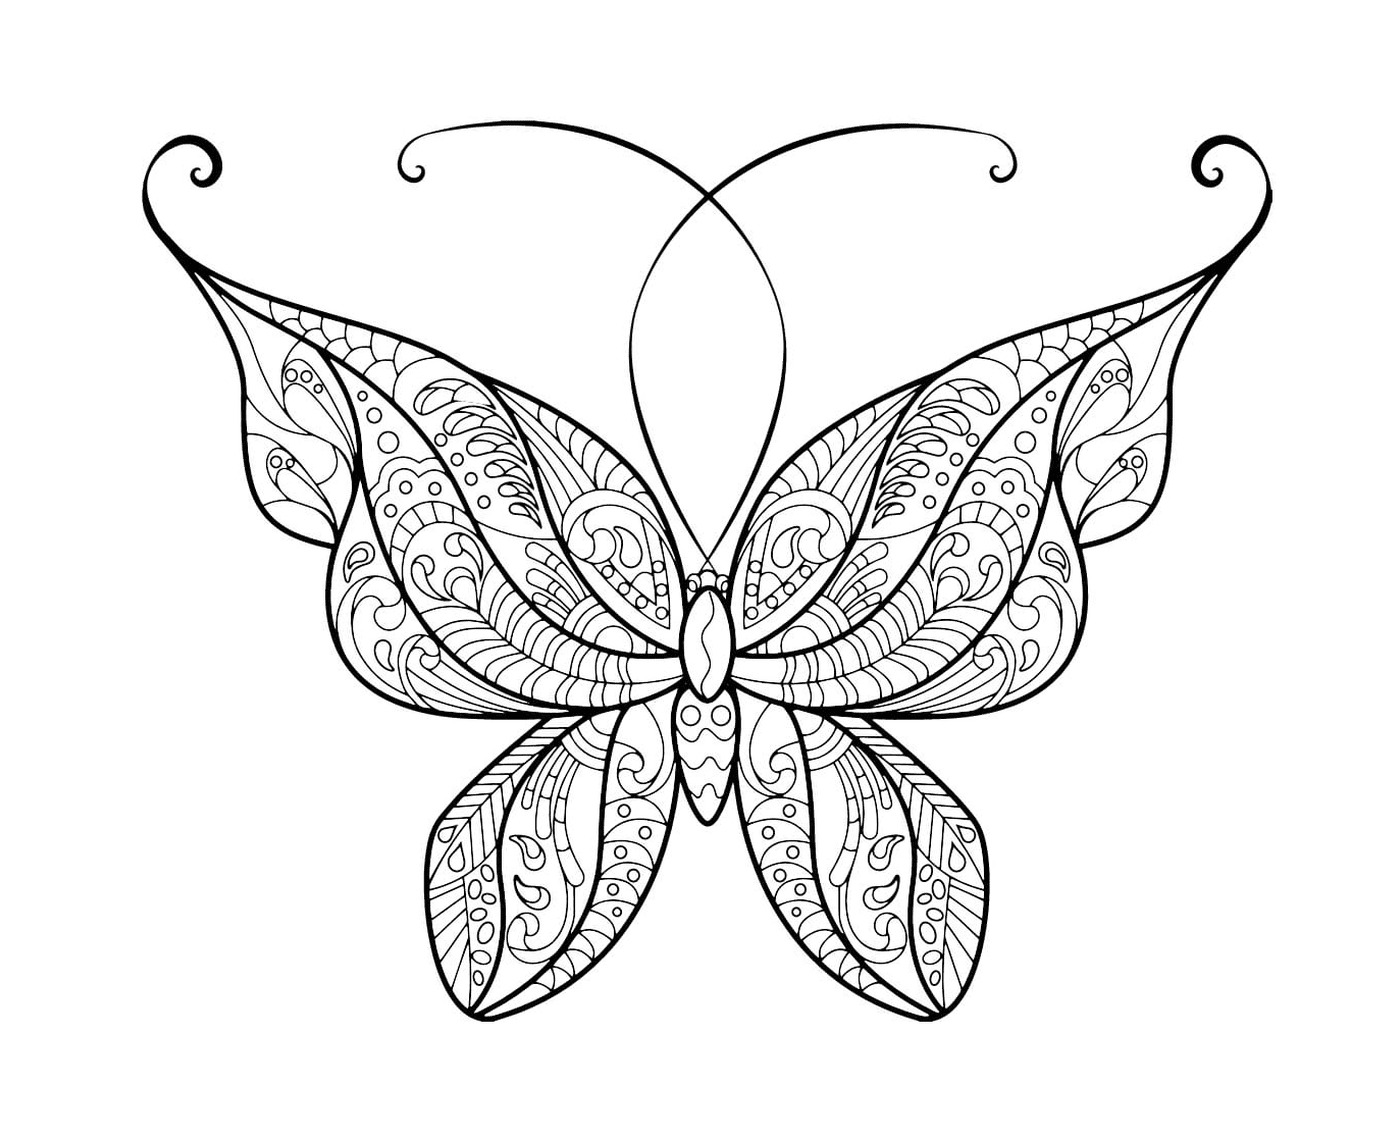  Magnífica mariposa adulta con elegantes patrones 